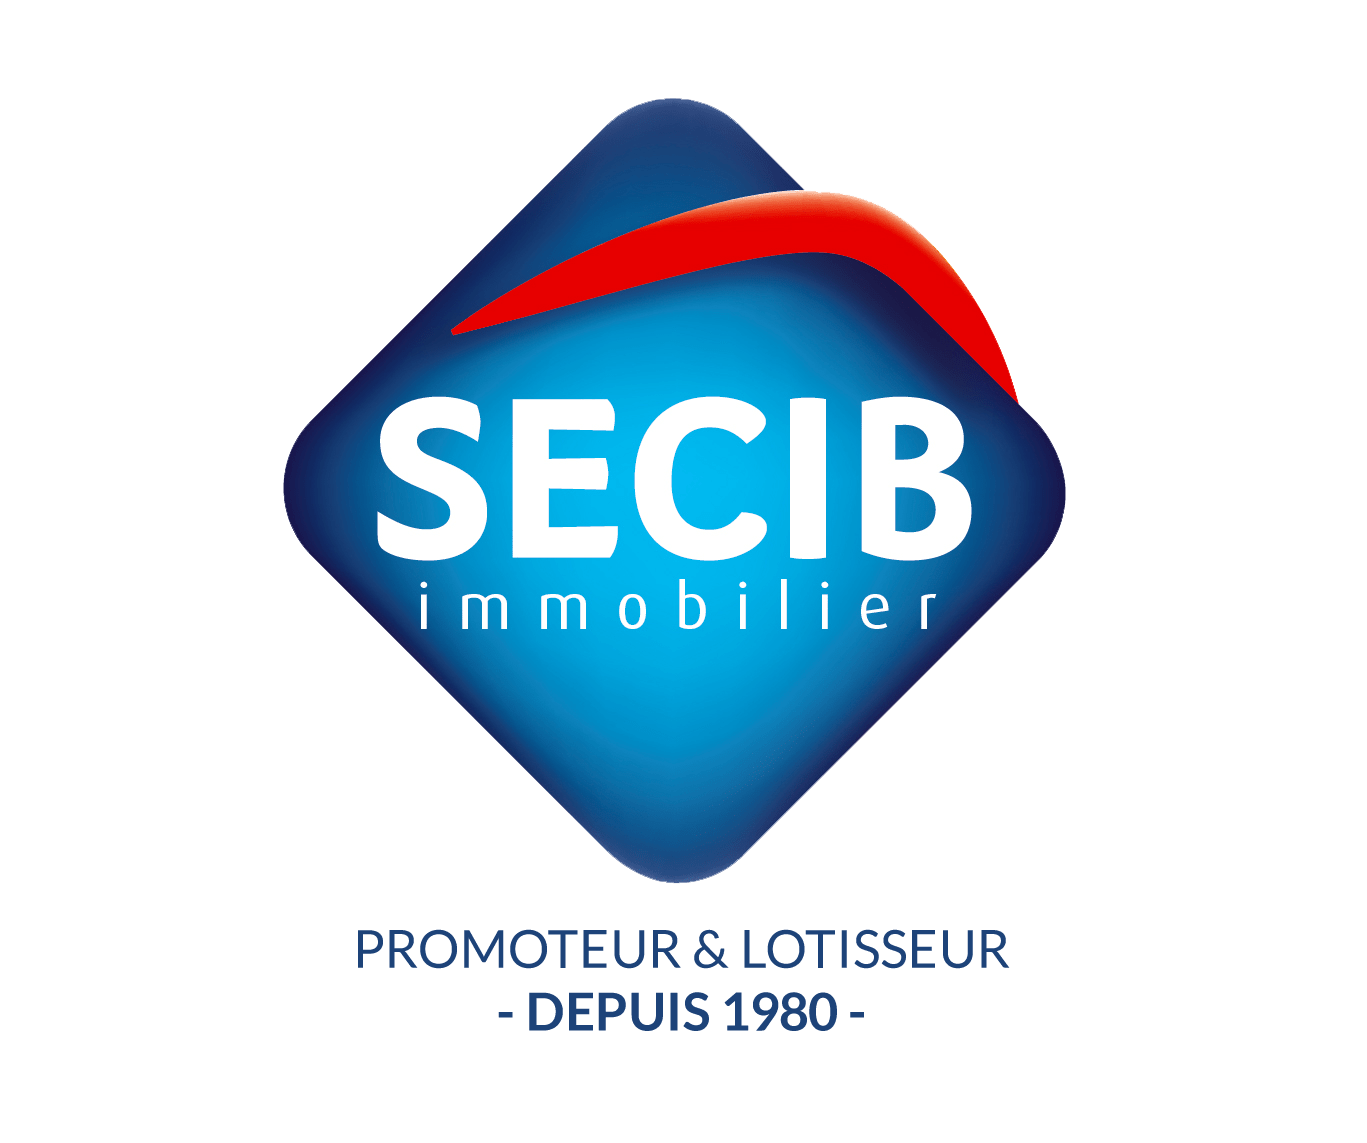 Logo Secib immobilier - promoteur & lotisseur depuis 1980